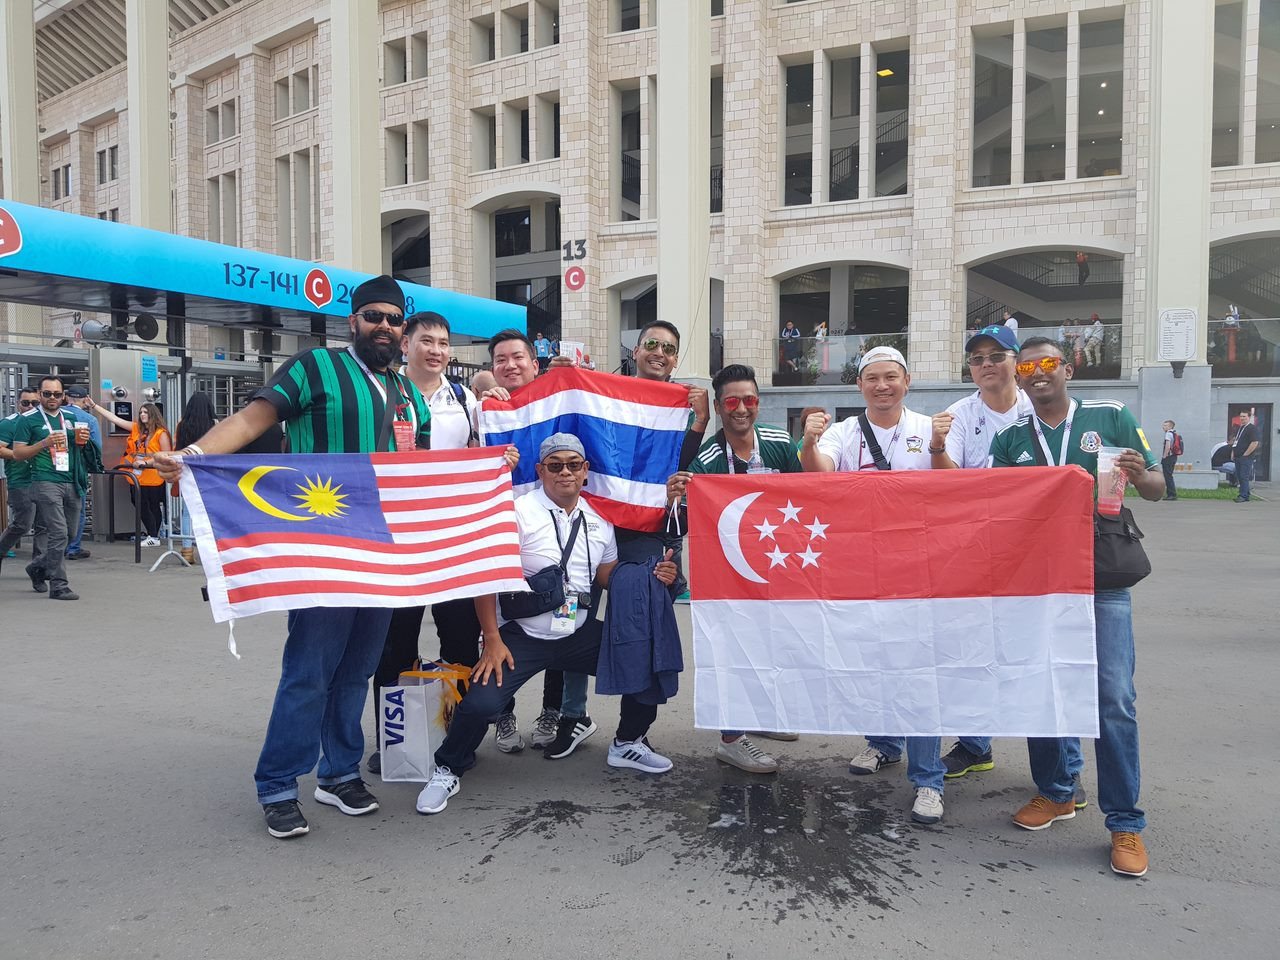 Jagjit bersama rakan-rakan serantau di Piala Dunia Russia 2018 - Gambar ihsan Jagjit Singh